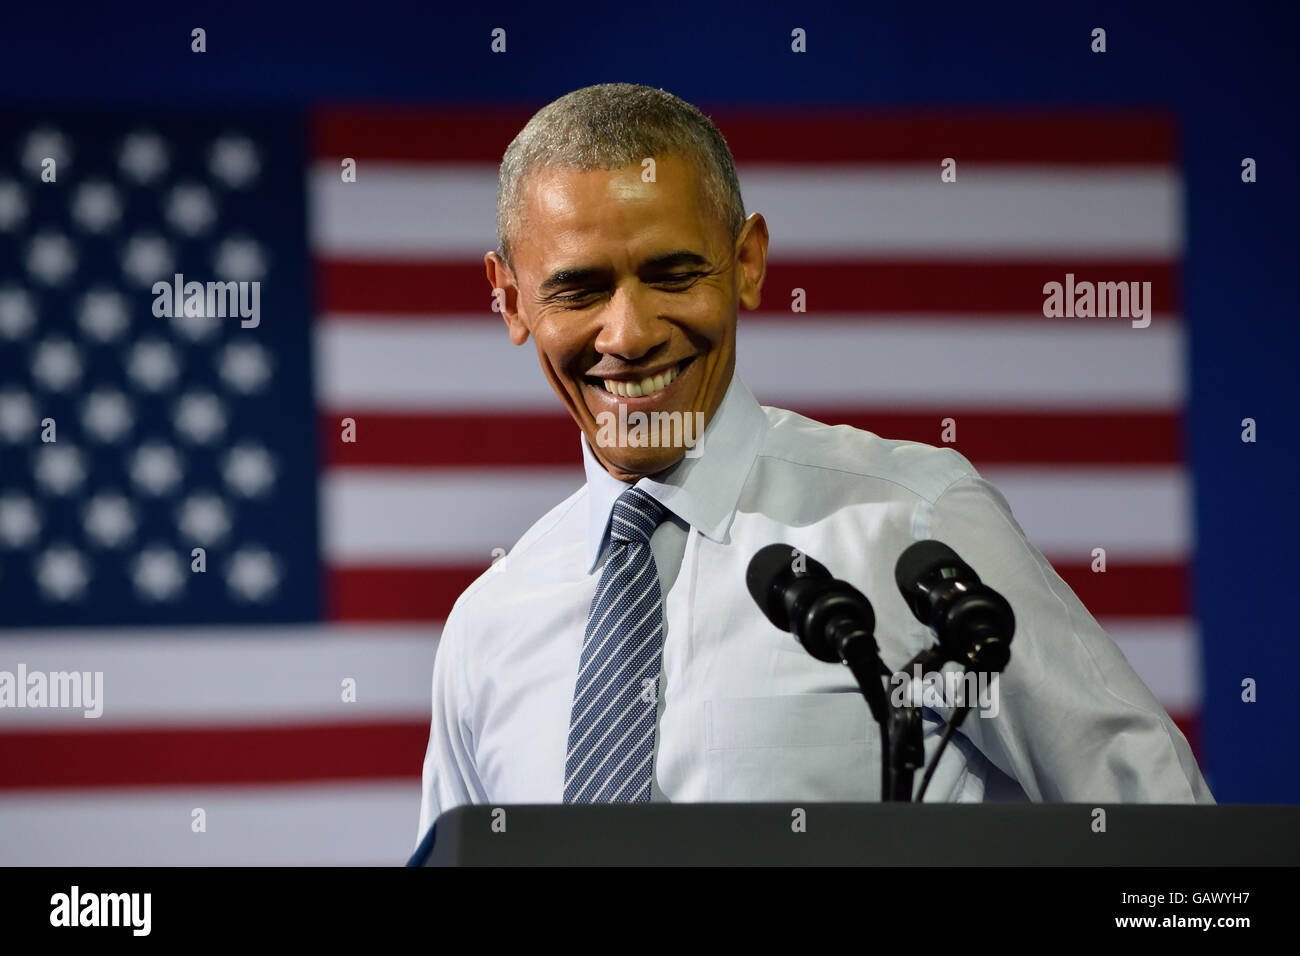 Charlotte, NC, EE.UU.. El 5 de julio, 2016. Un retrato del presidente estadounidense Barack Obama sonríe como él pronuncia un discurso en un mitin de campaña, en el centro de convenciones de Charlotte. Crédito: Evan El-Amin/Alamy Live News Foto de stock